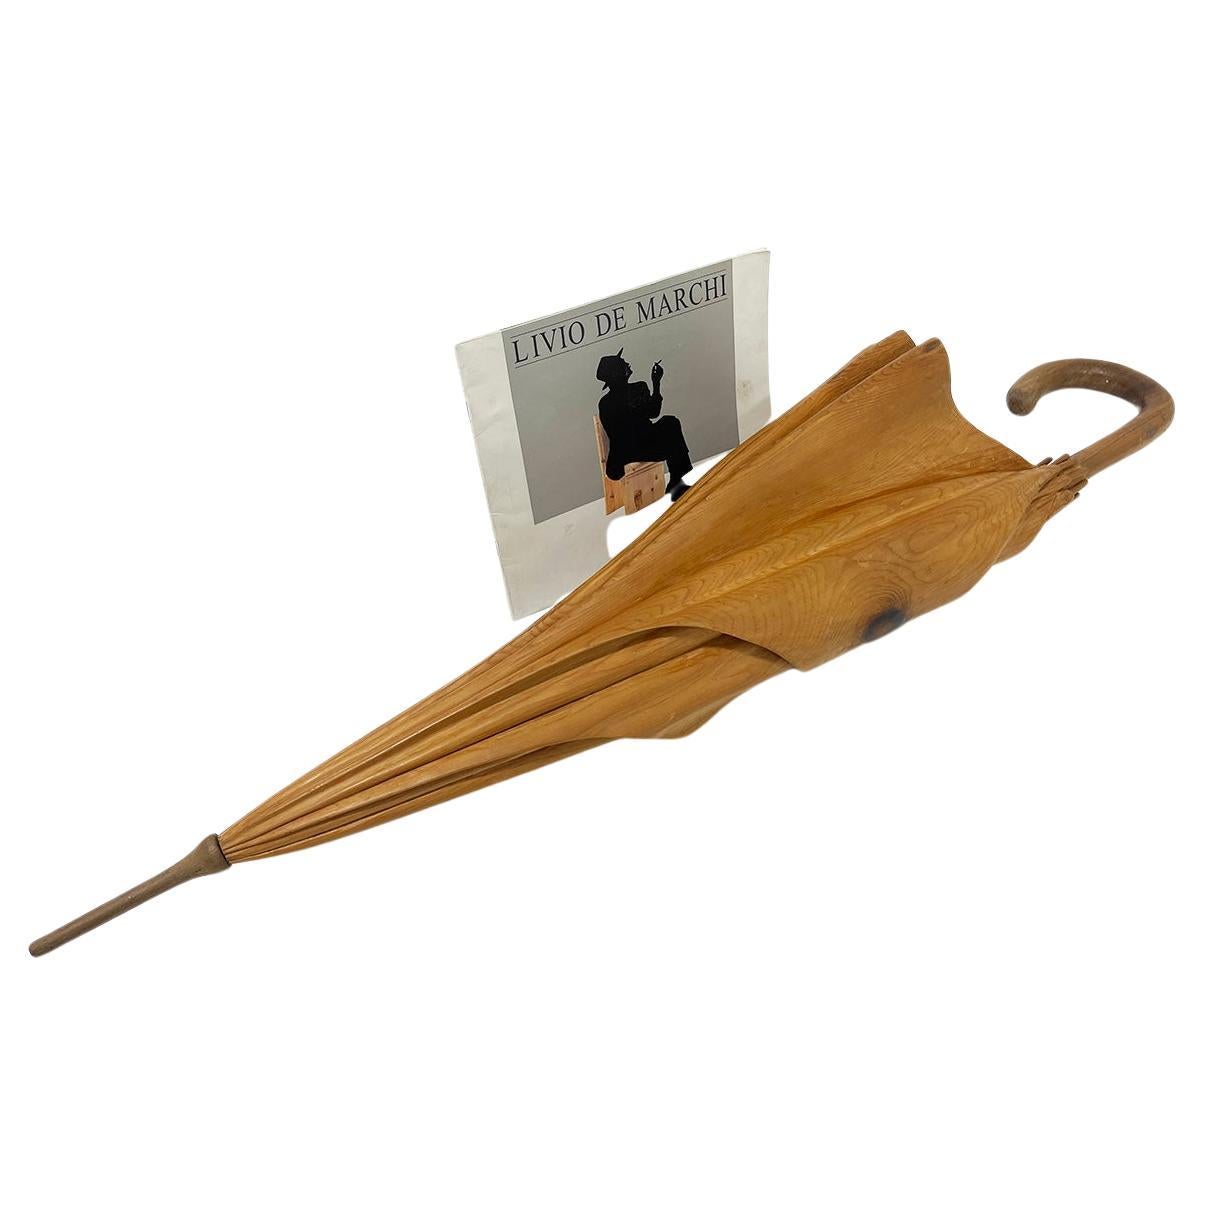 Wooden carved Umbrella by Livio De Marchi, #5/19, Italy 1990